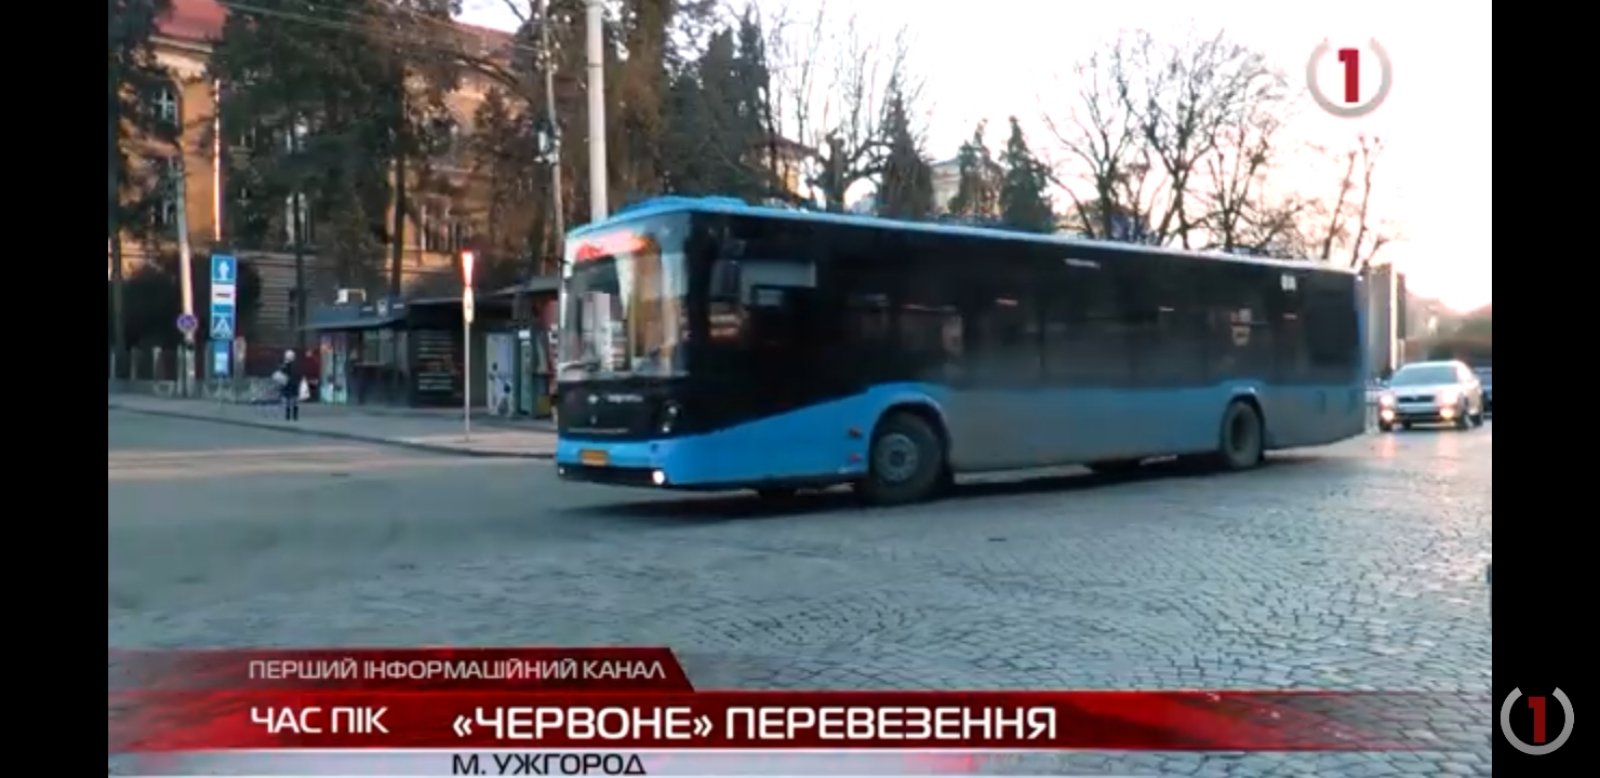 "Червоне" перевезення: курсування громадського транспорту в Ужгороді (ВІДЕО)